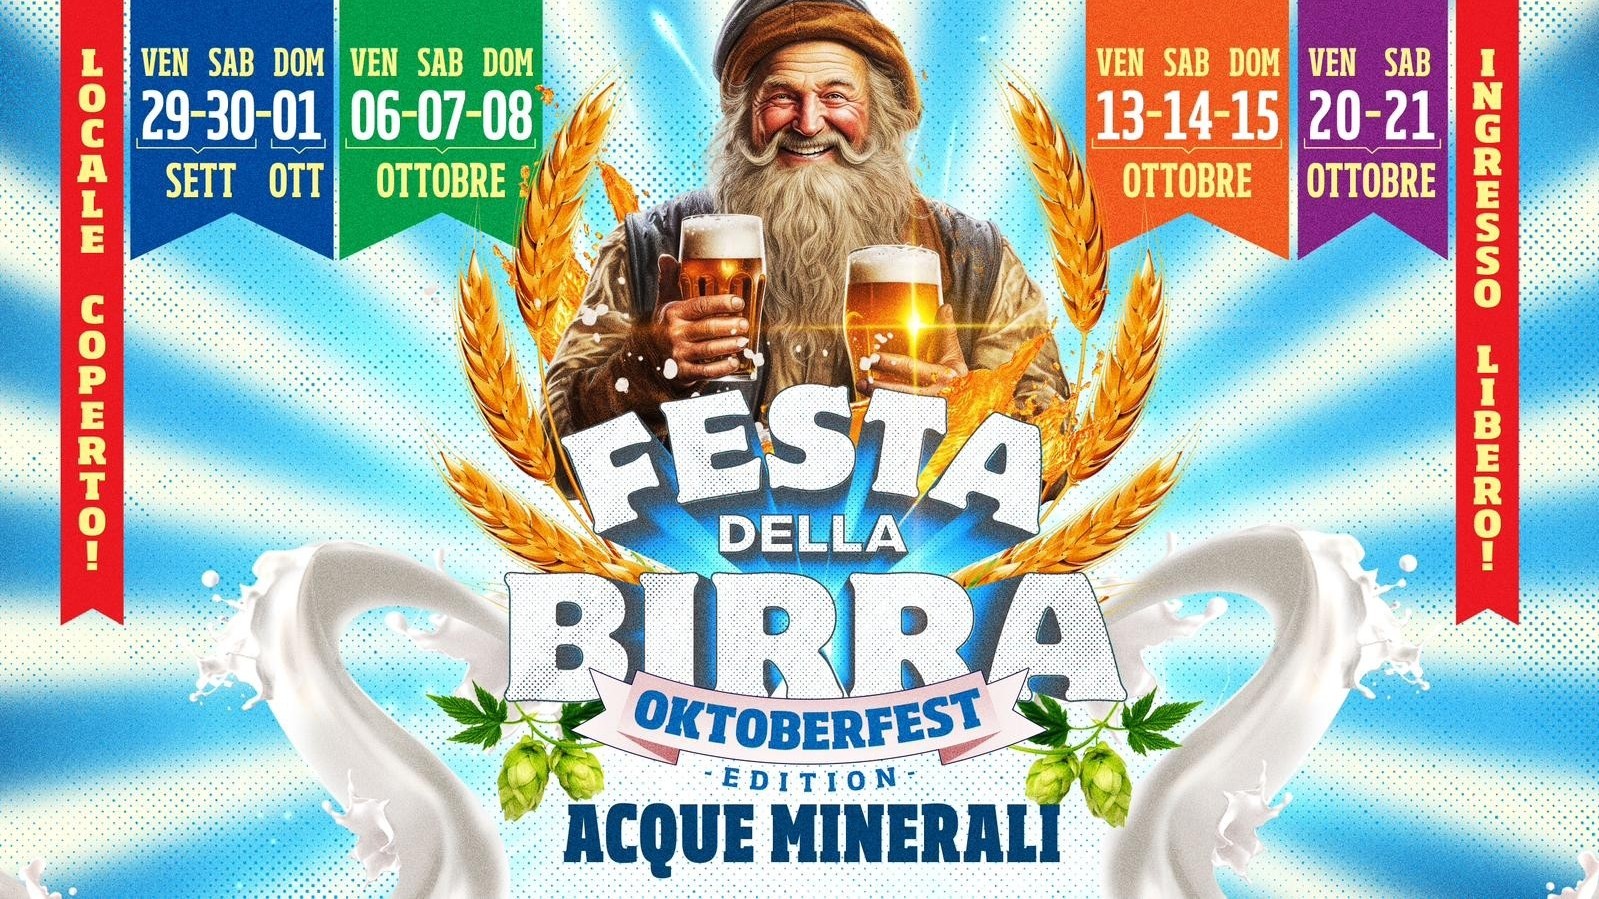 La Festa della Birra - Oktoberfest Edition